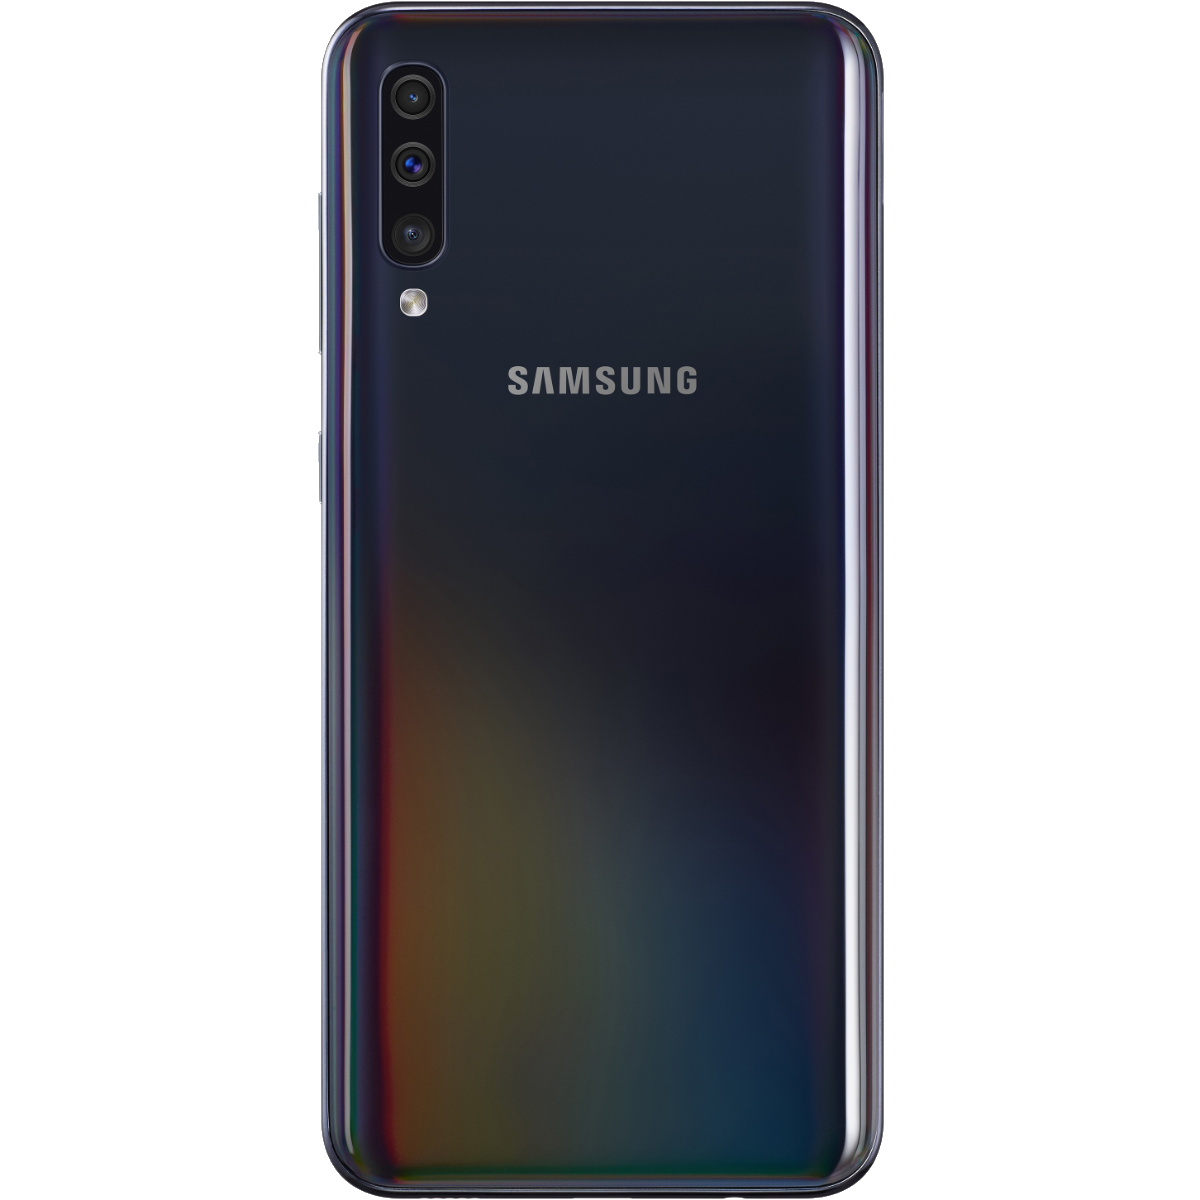 Galaxy A50 (2019)